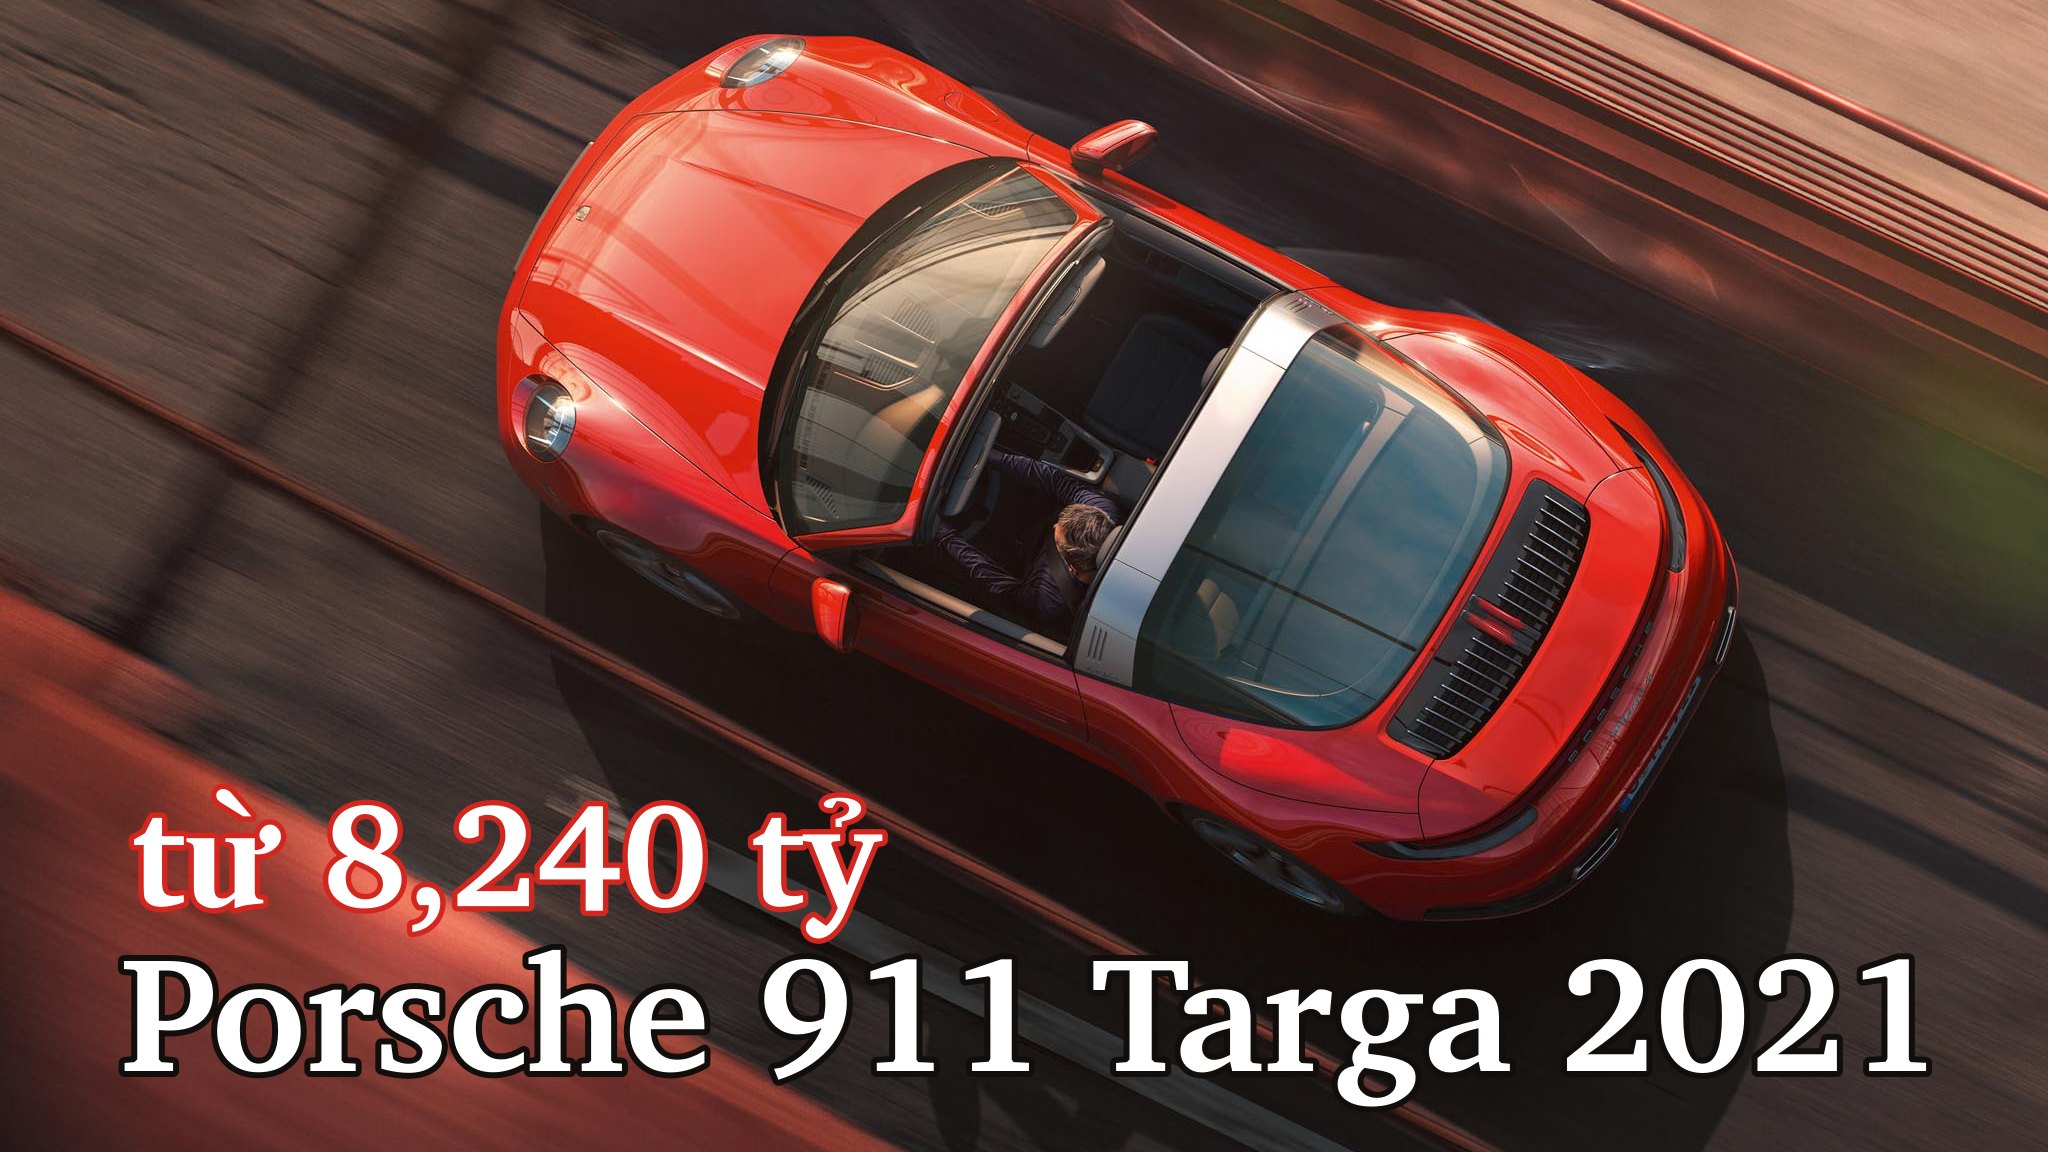 XEtv-Porsche-Targa-2021-Vietnam-Cover.jpg